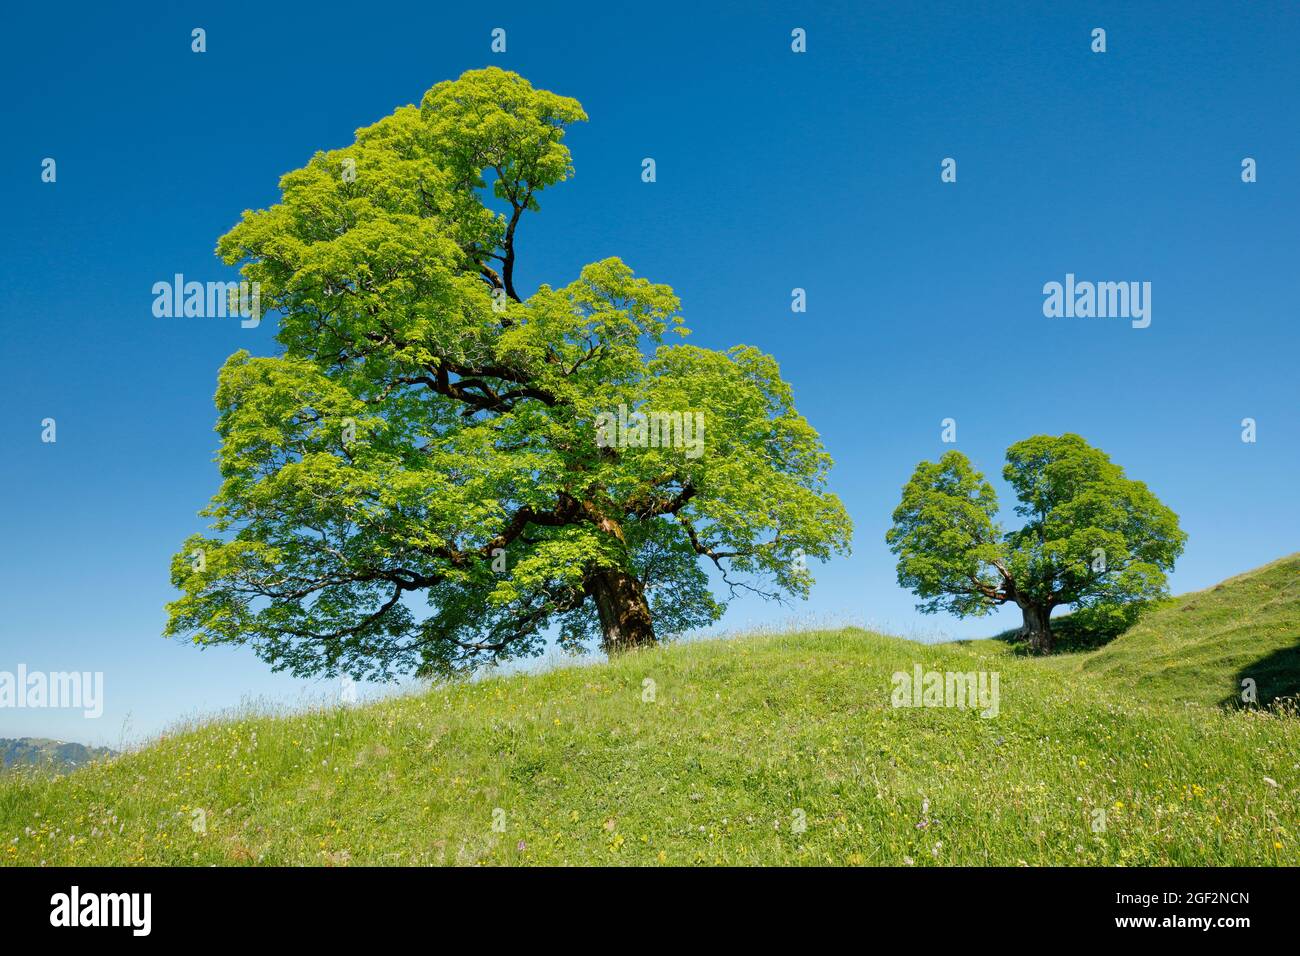 sycamore arce, gran arce (Acer pseudoplatanus), dos arenadas antiguas arces sycamore en primavera cerca de Enntbuehl, Toggenburg, Suiza, St. Gallen Foto de stock